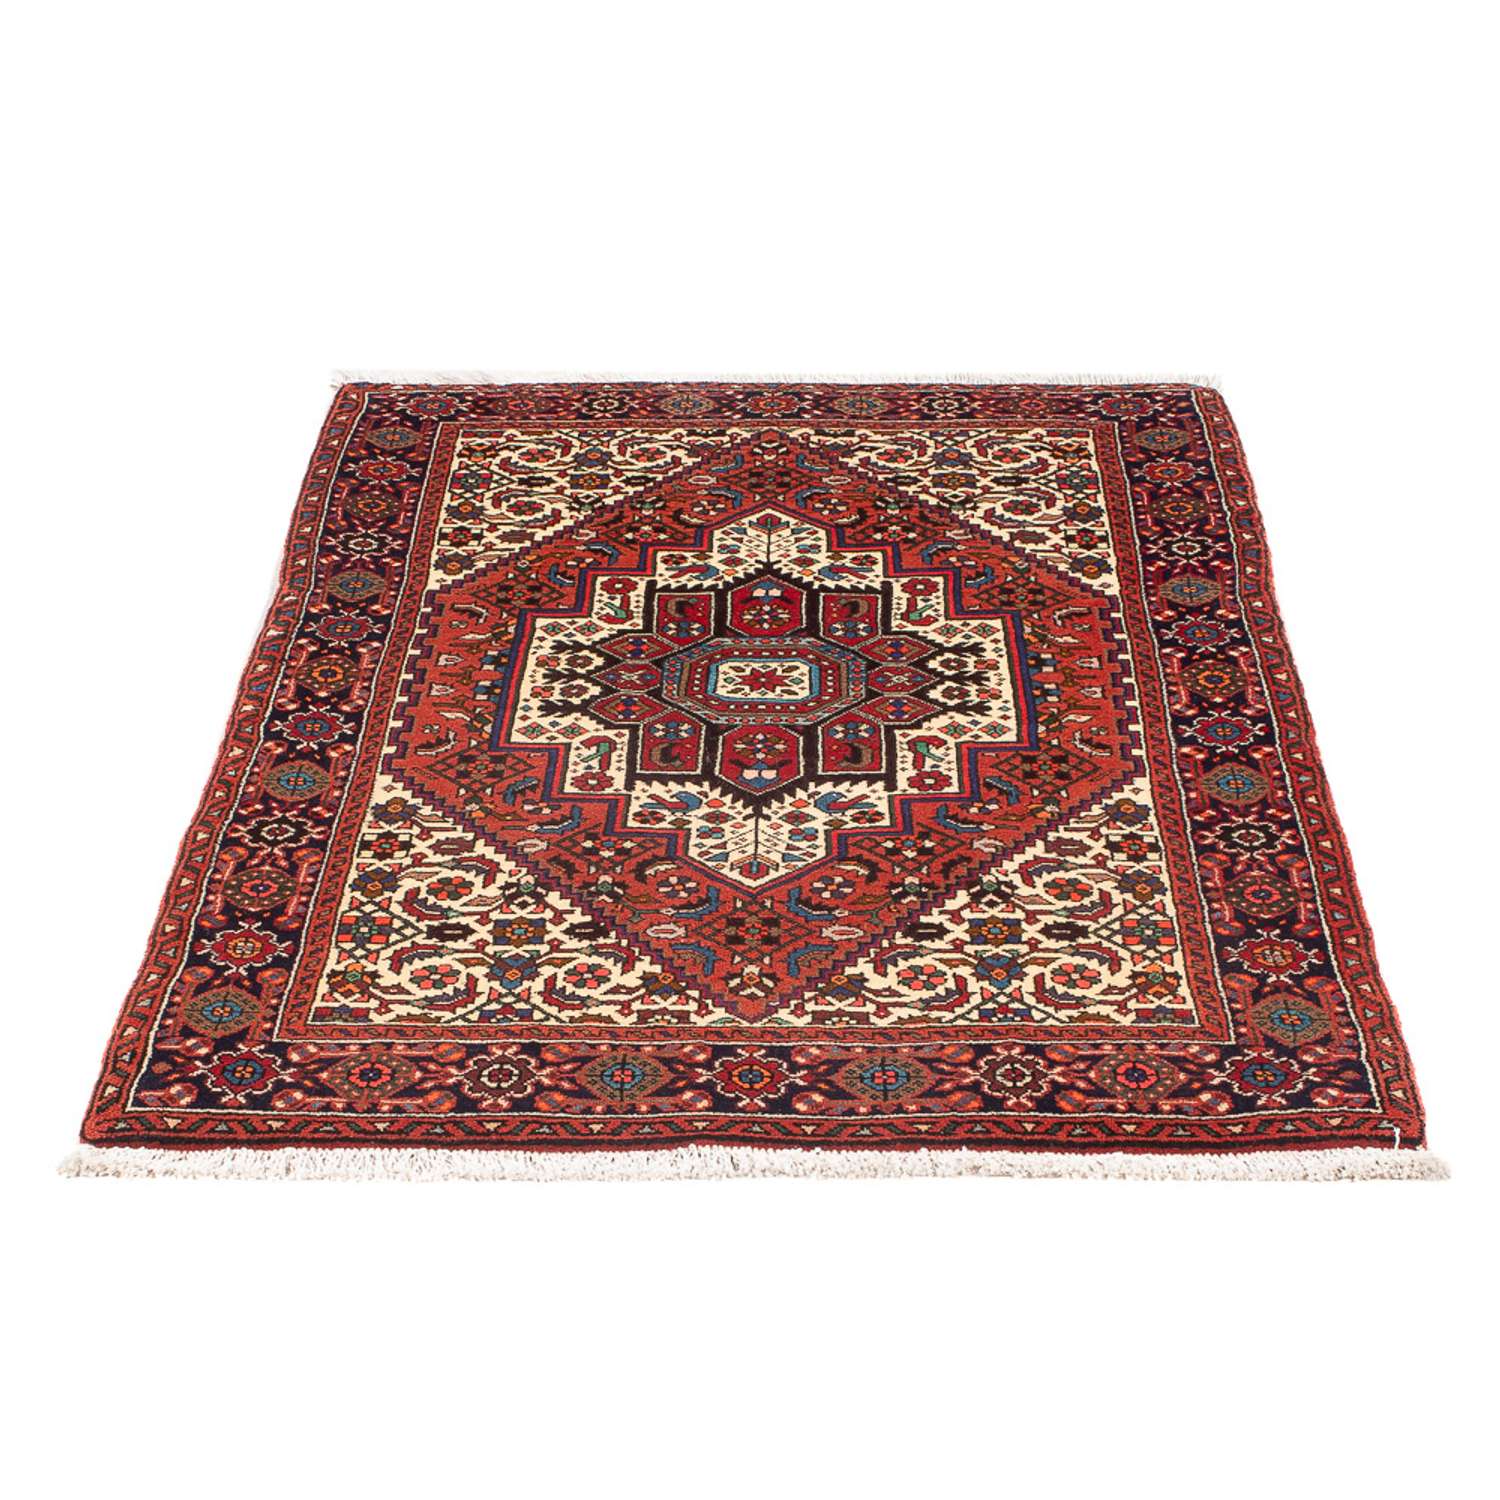 Persisk teppe - Nomadisk - 150 x 70 cm - lys rød